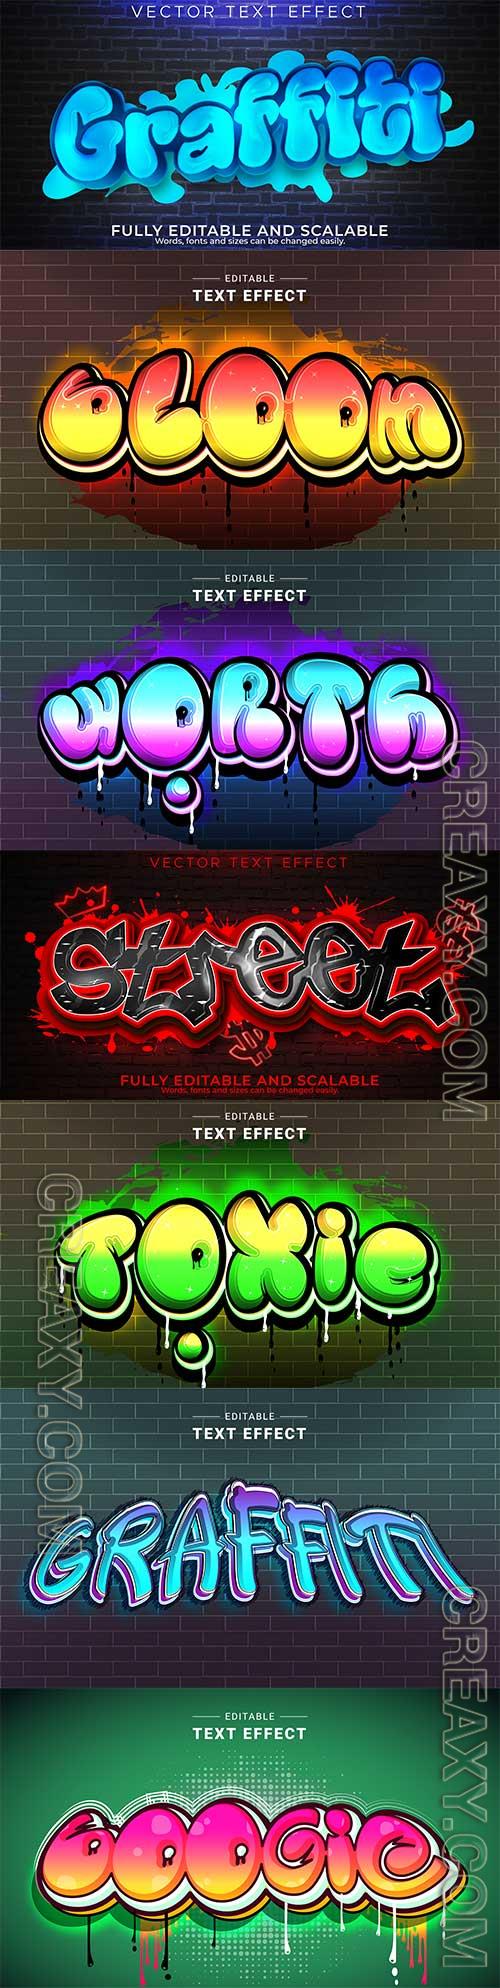 Graffiti street text effect vector